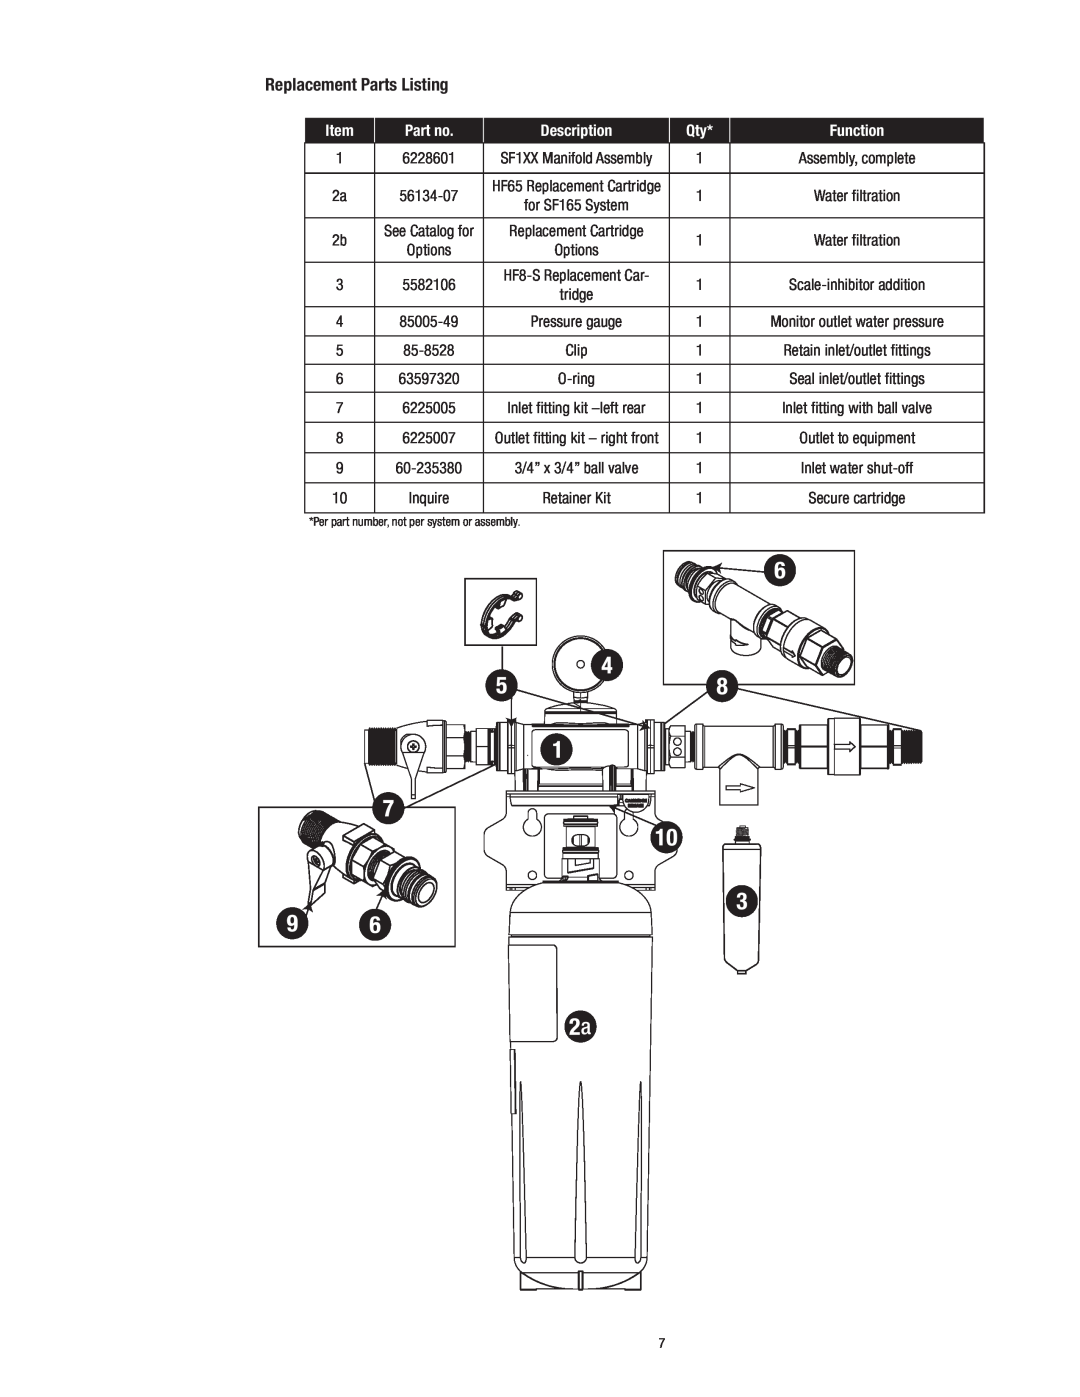 3M SF1XX instruction manual Replacement Parts Listing, Description, Function, Clip 